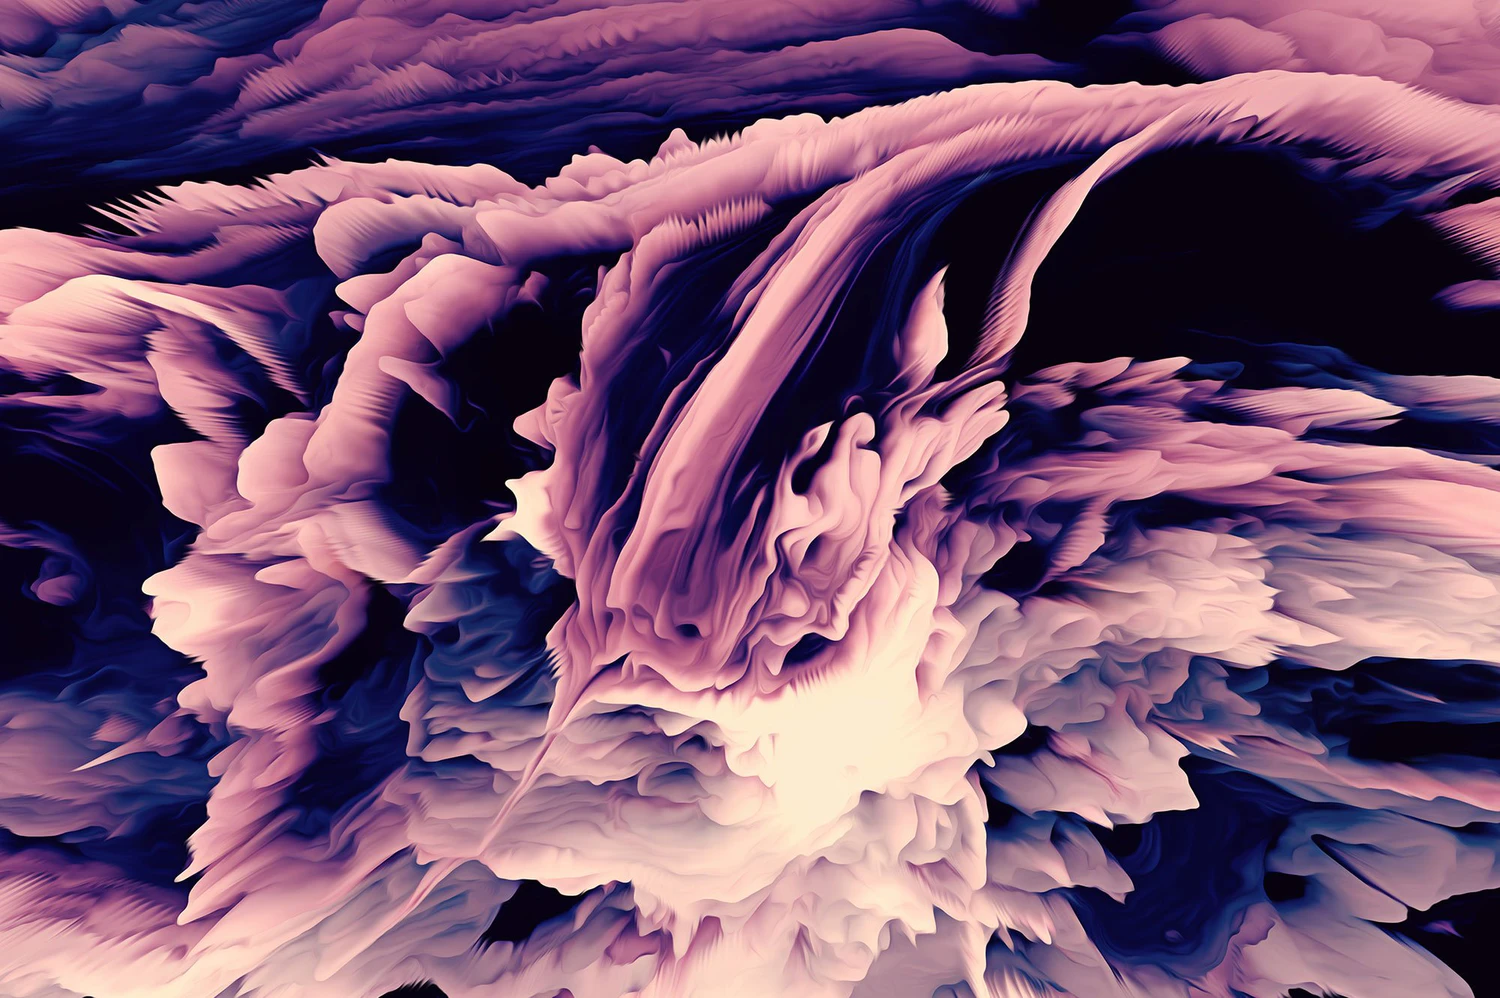 5213 高清创意抽象涂料绘画纹理3D艺术形状多彩背景图片素材 Energy Vol. 2 40 Abstract Backgrounds@GOOODME.COM